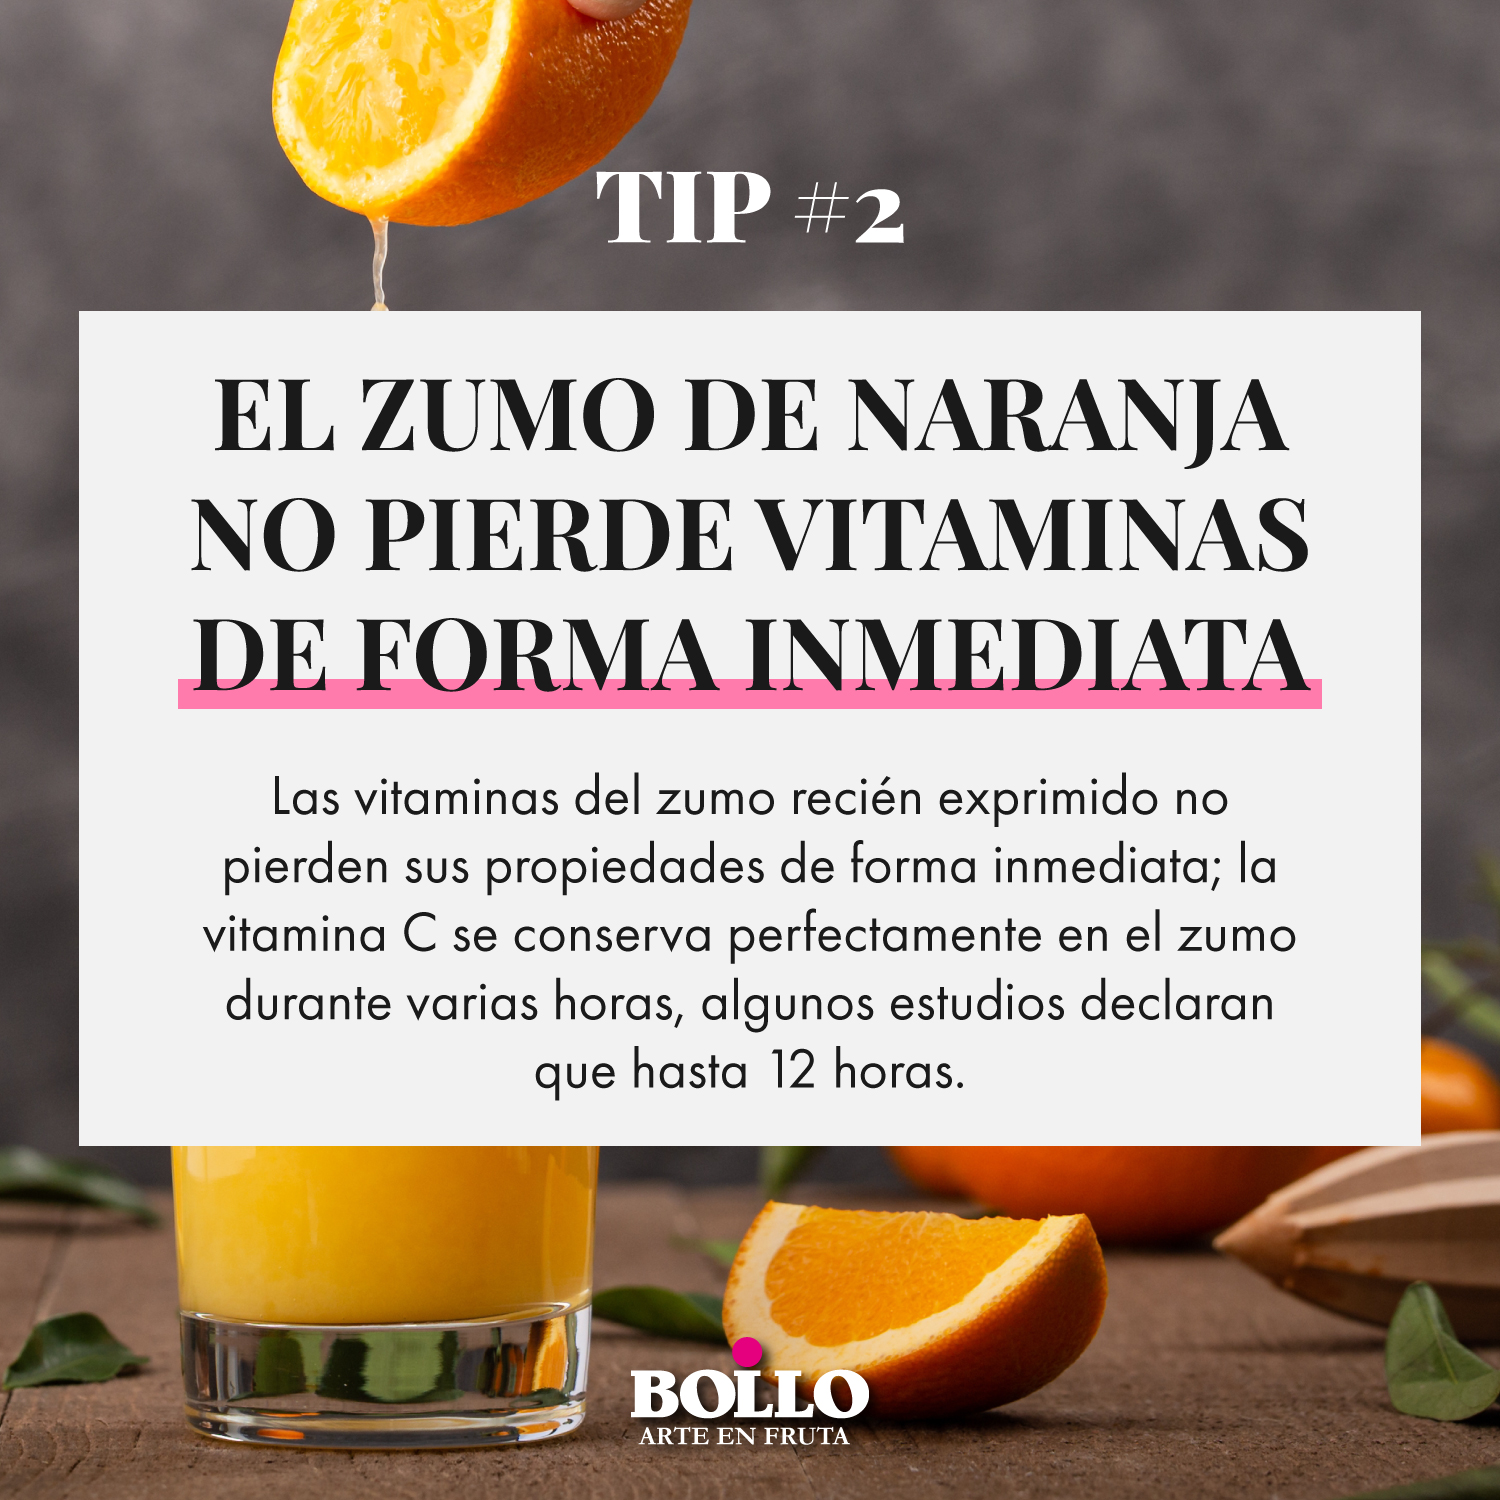 El zumo de naranja no pierde vitaminas de forma inmediata